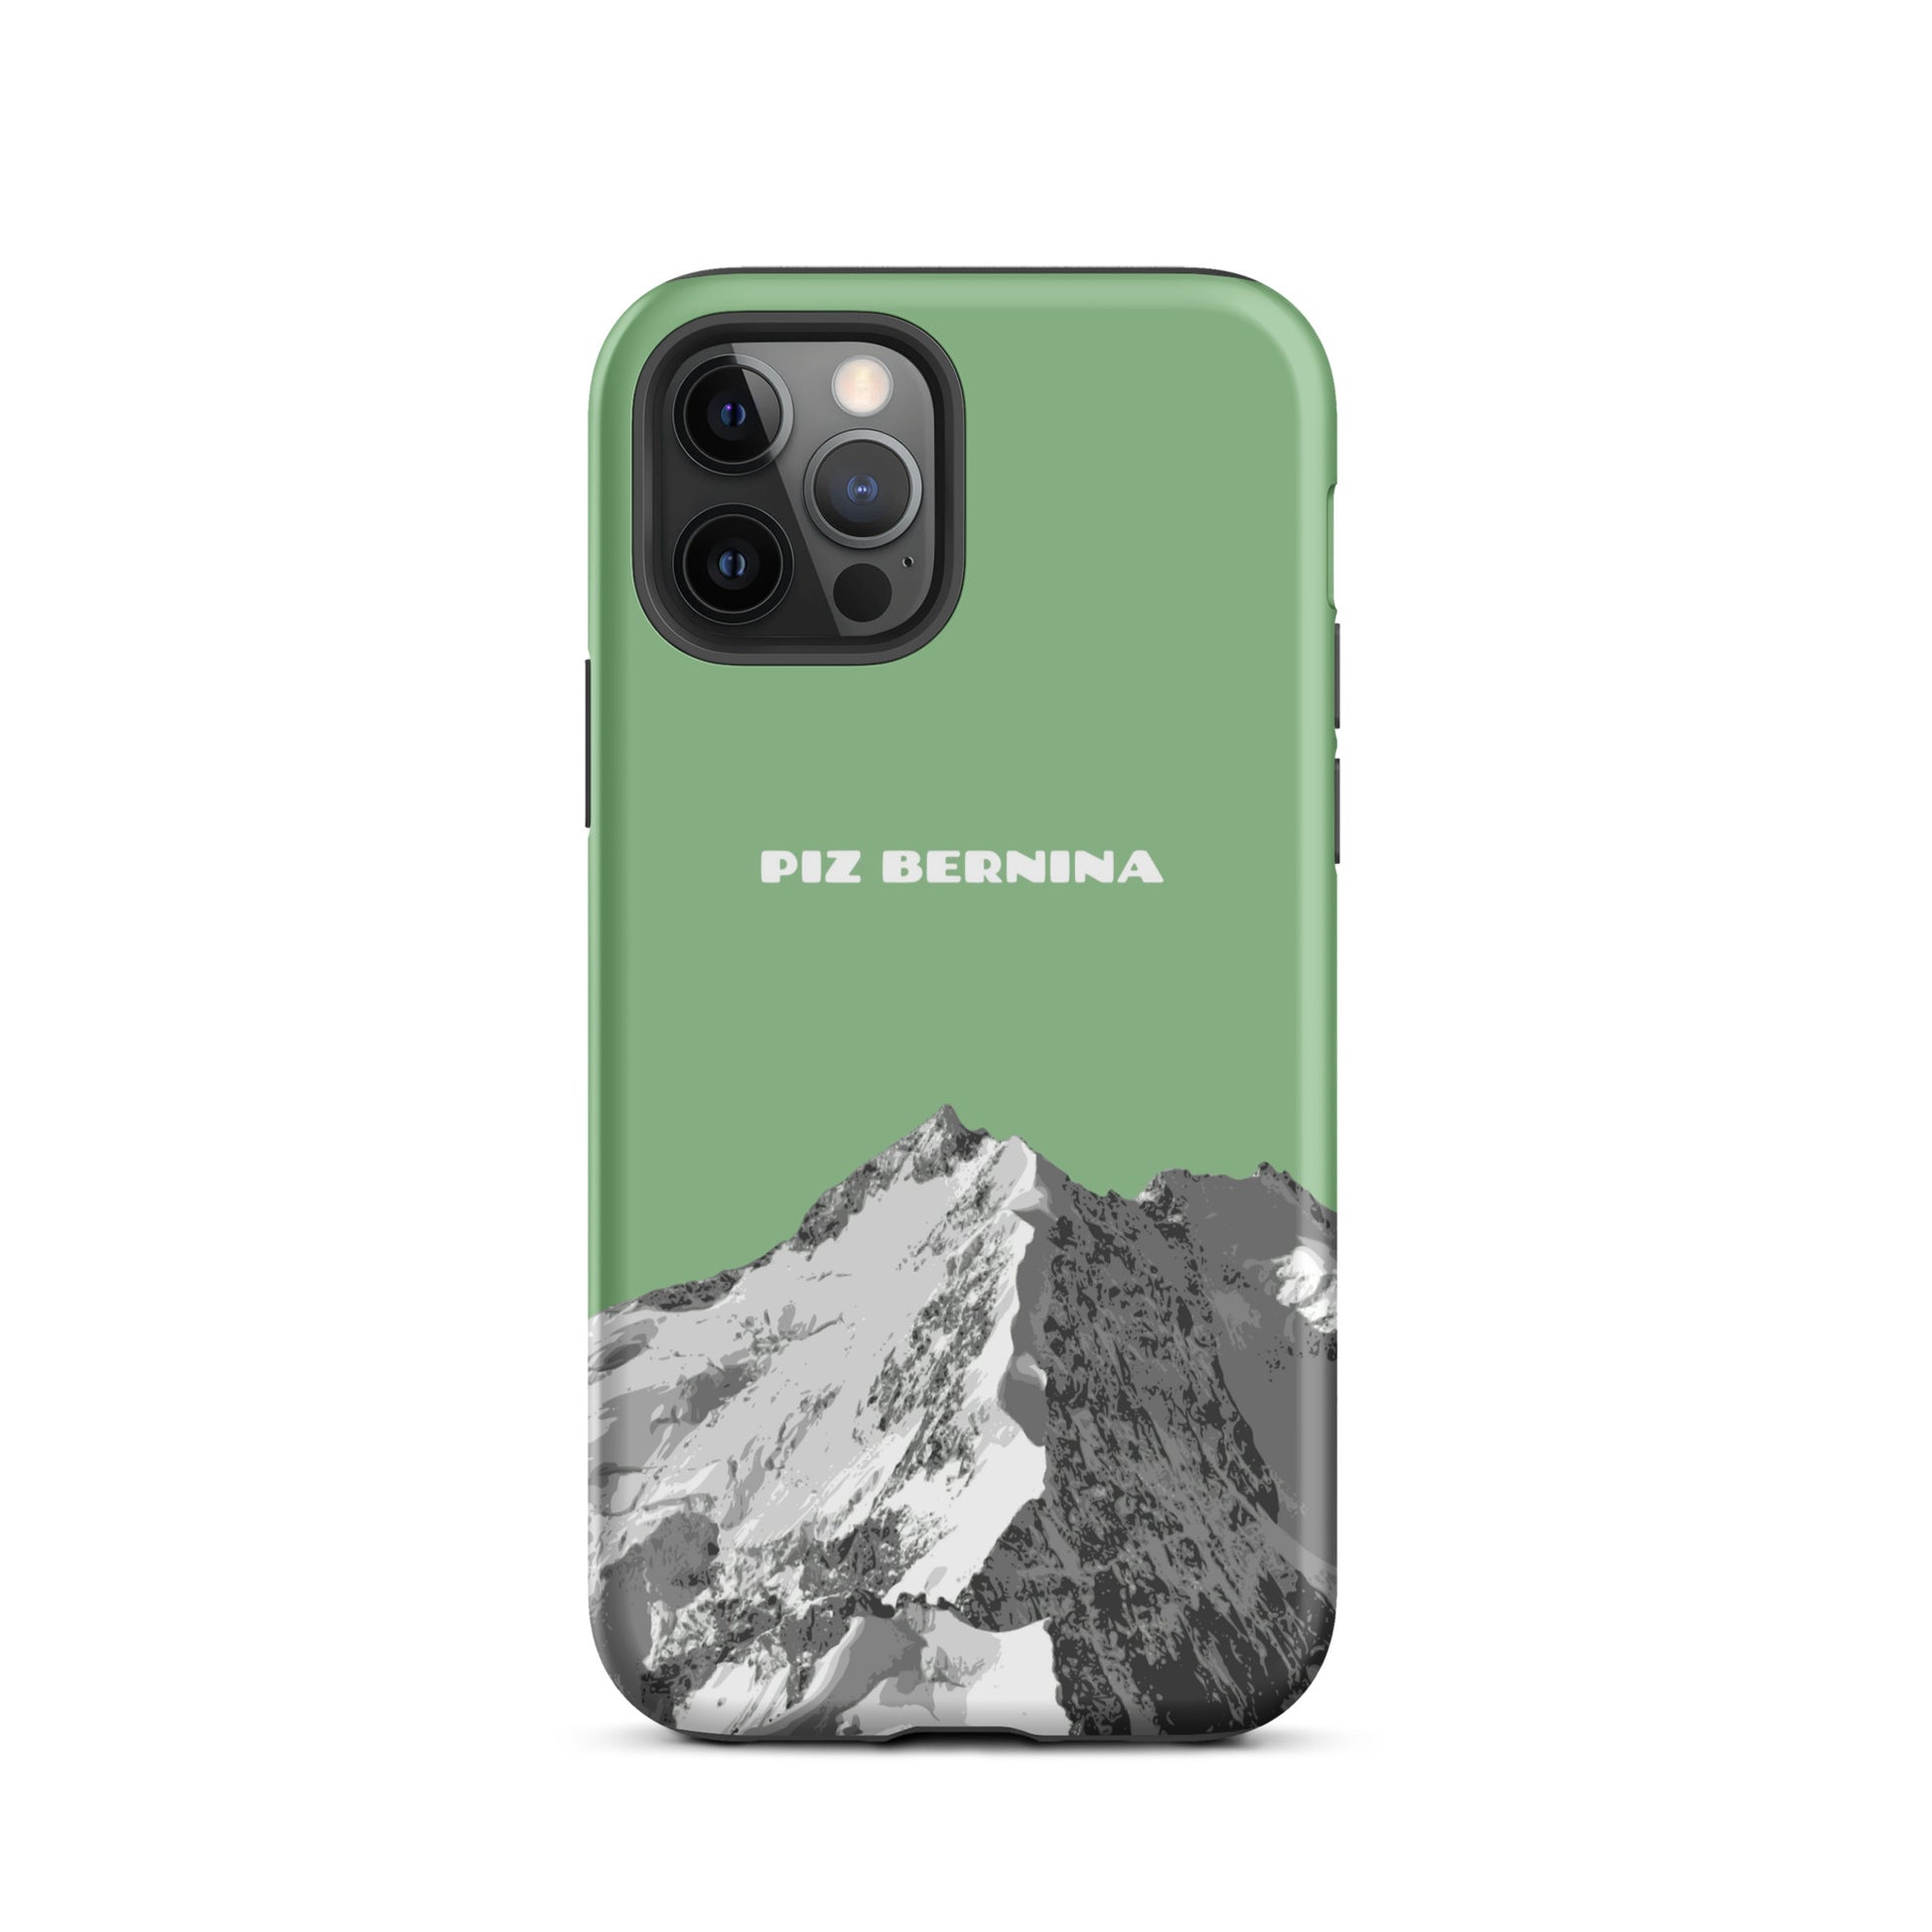 Hülle für das iPhone 12 Pro von Apple in der Farbe Hellgrün, dass den Piz Bernina in Graubünden zeigt.